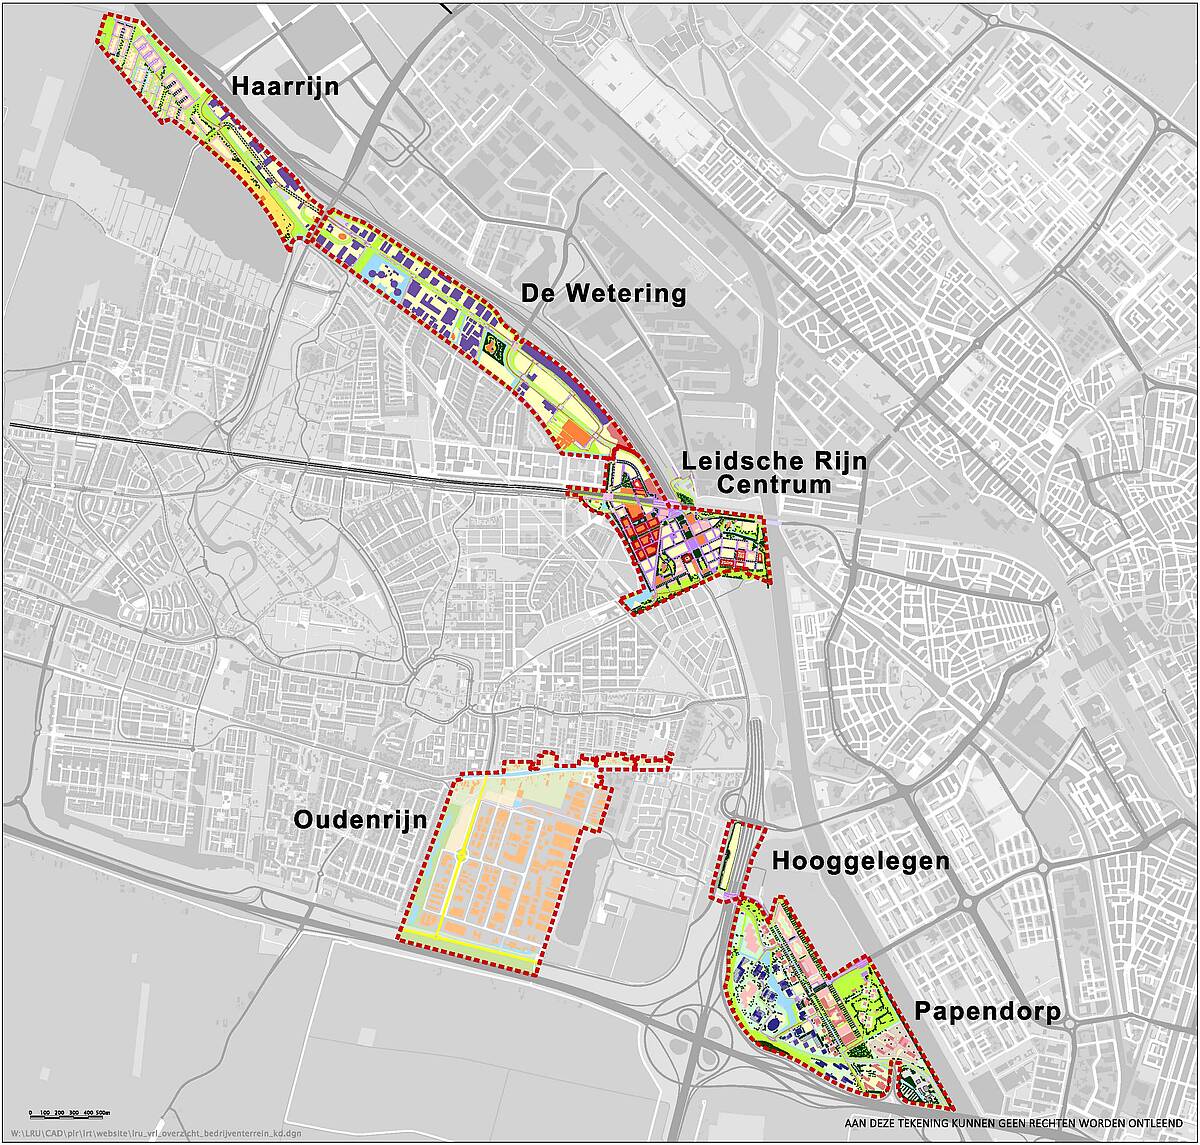 Kaart met gebieden: Haarrijn, De Wetering, Leidsche Rijn Centrum, Ouderijn, Hooggelegen, Papendorp